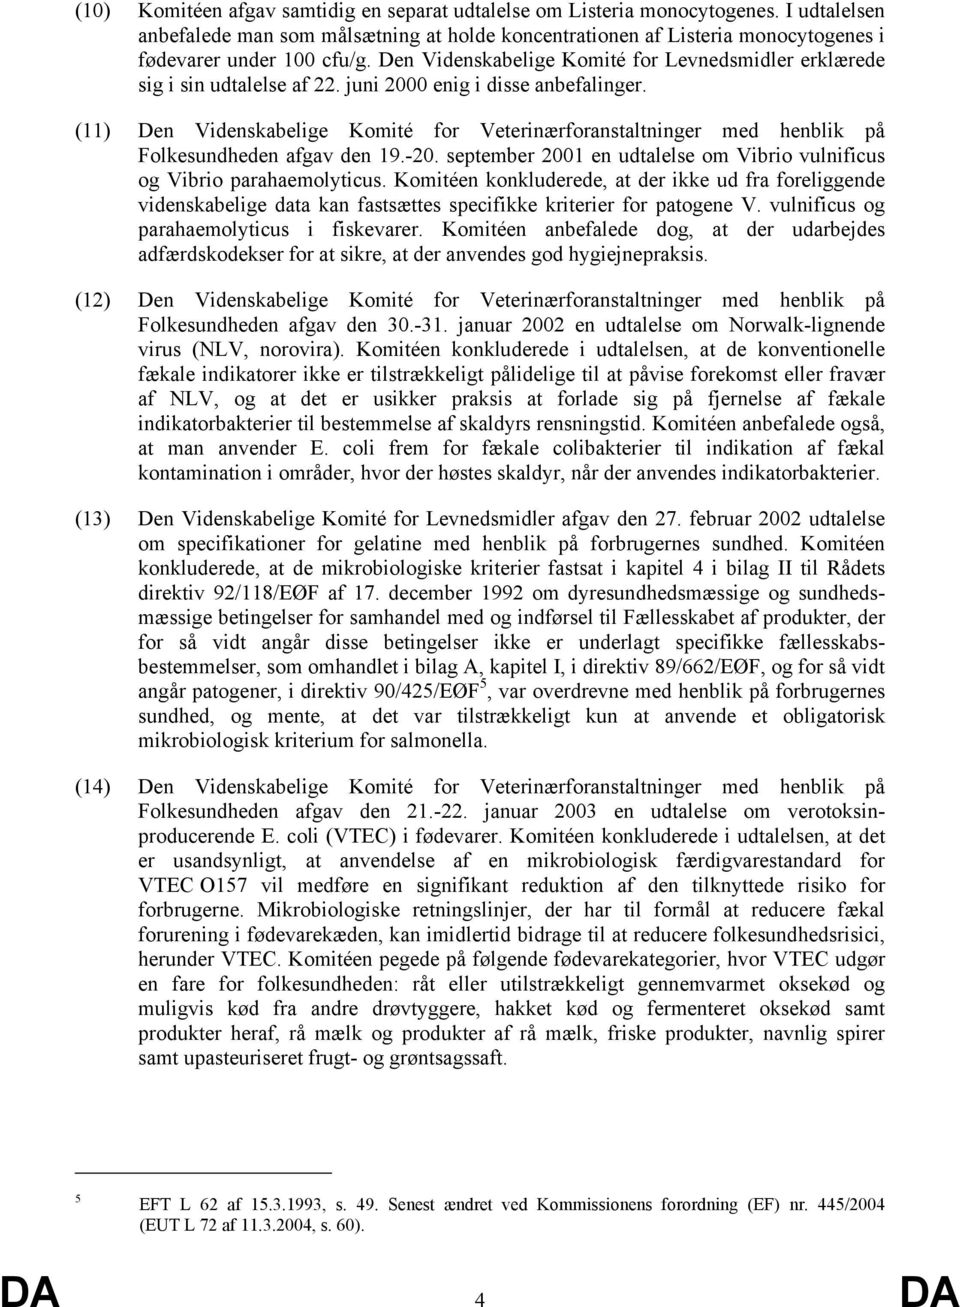 (11) Den Videnskabelige Komité for Veterinærforanstaltninger med henblik på Folkesundheden afgav den 19.-20. september 2001 en udtalelse om Vibrio vulnificus og Vibrio parahaemolyticus.